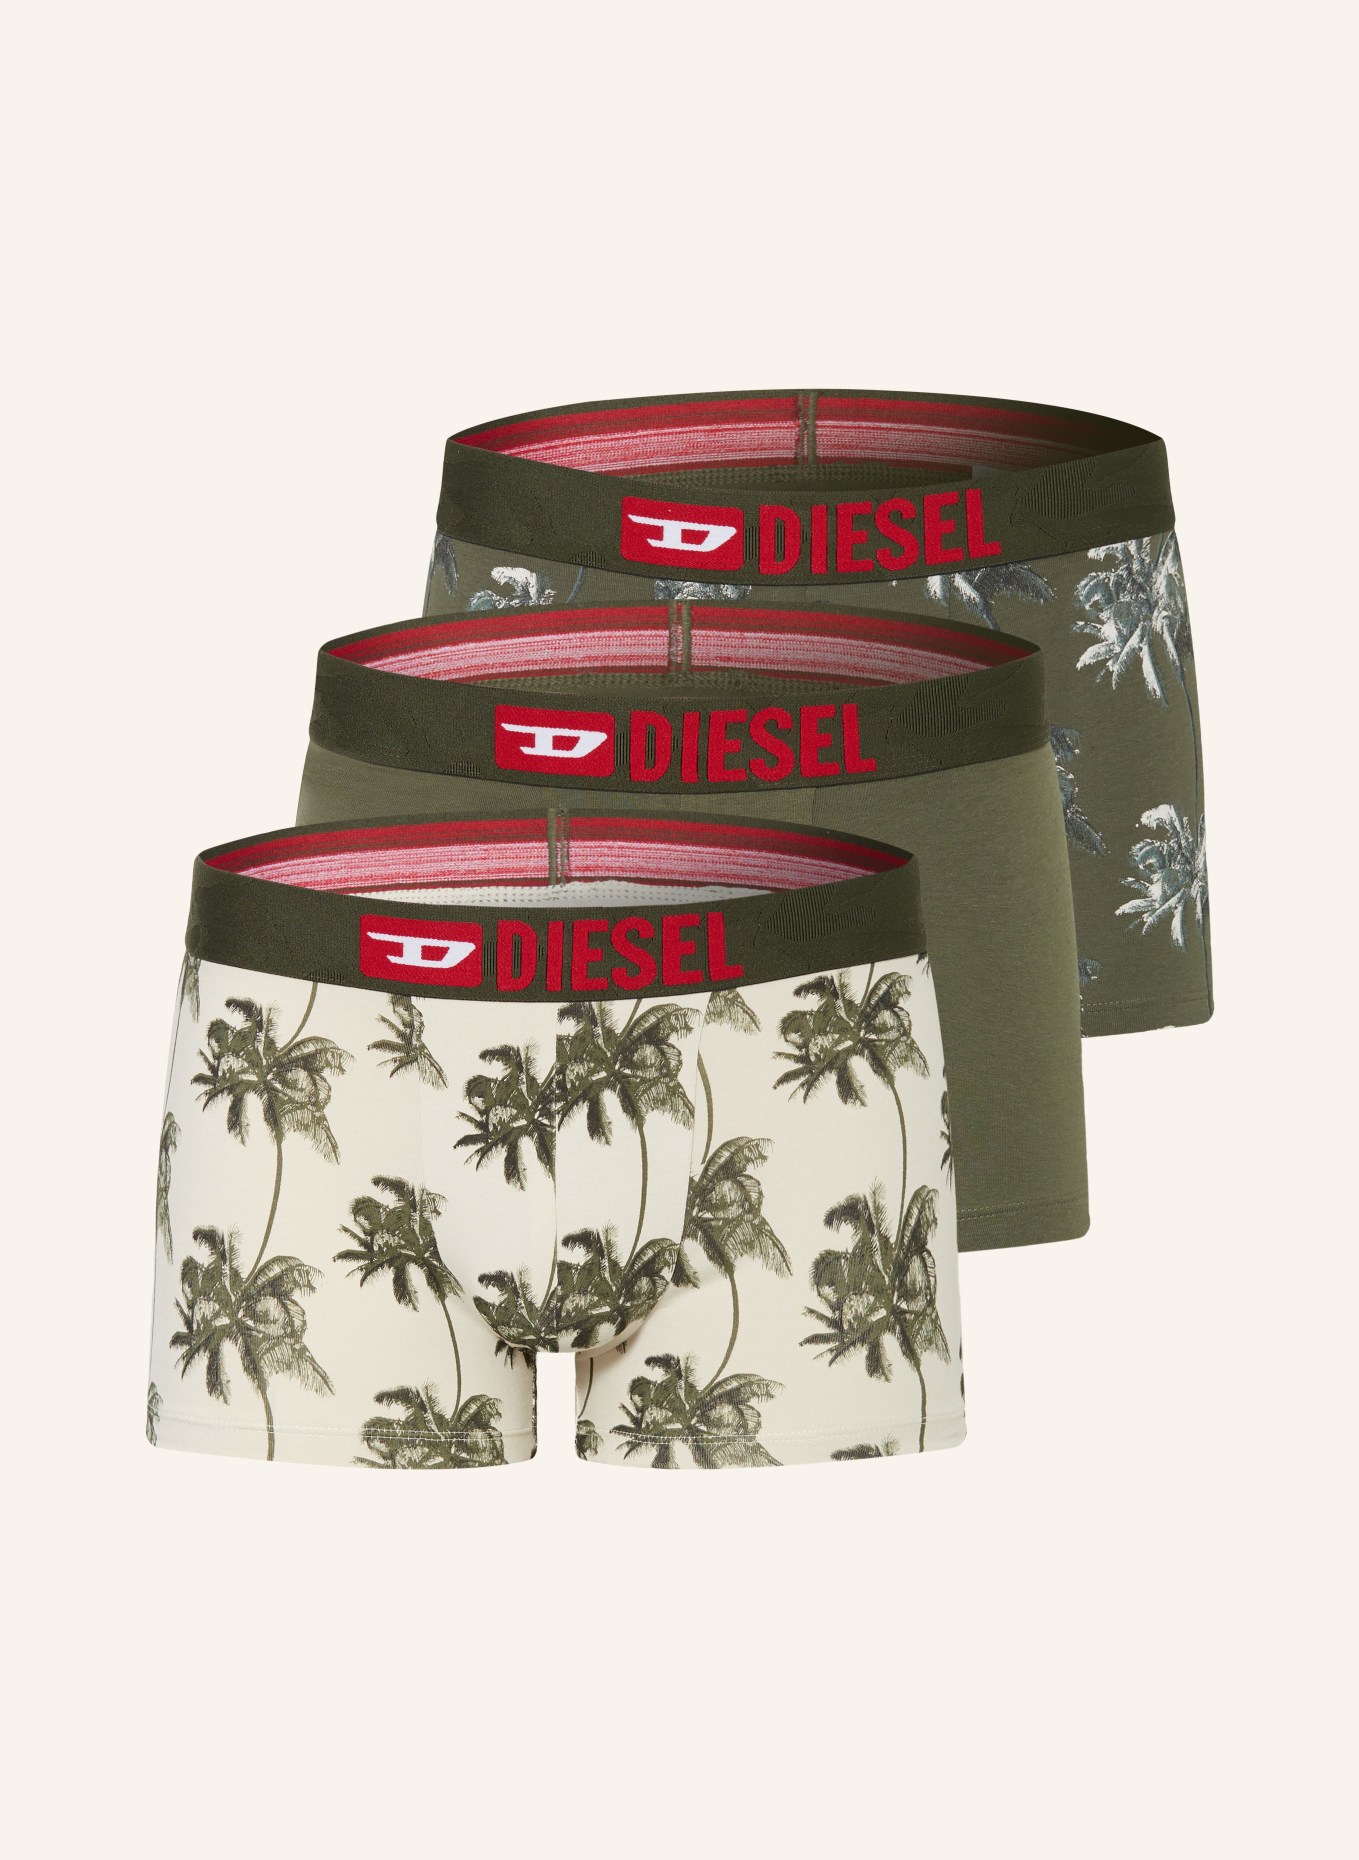 DIESEL 3-pack boxer shorts DAMIEN, Color: CREAM/ OLIVE (Image 1)